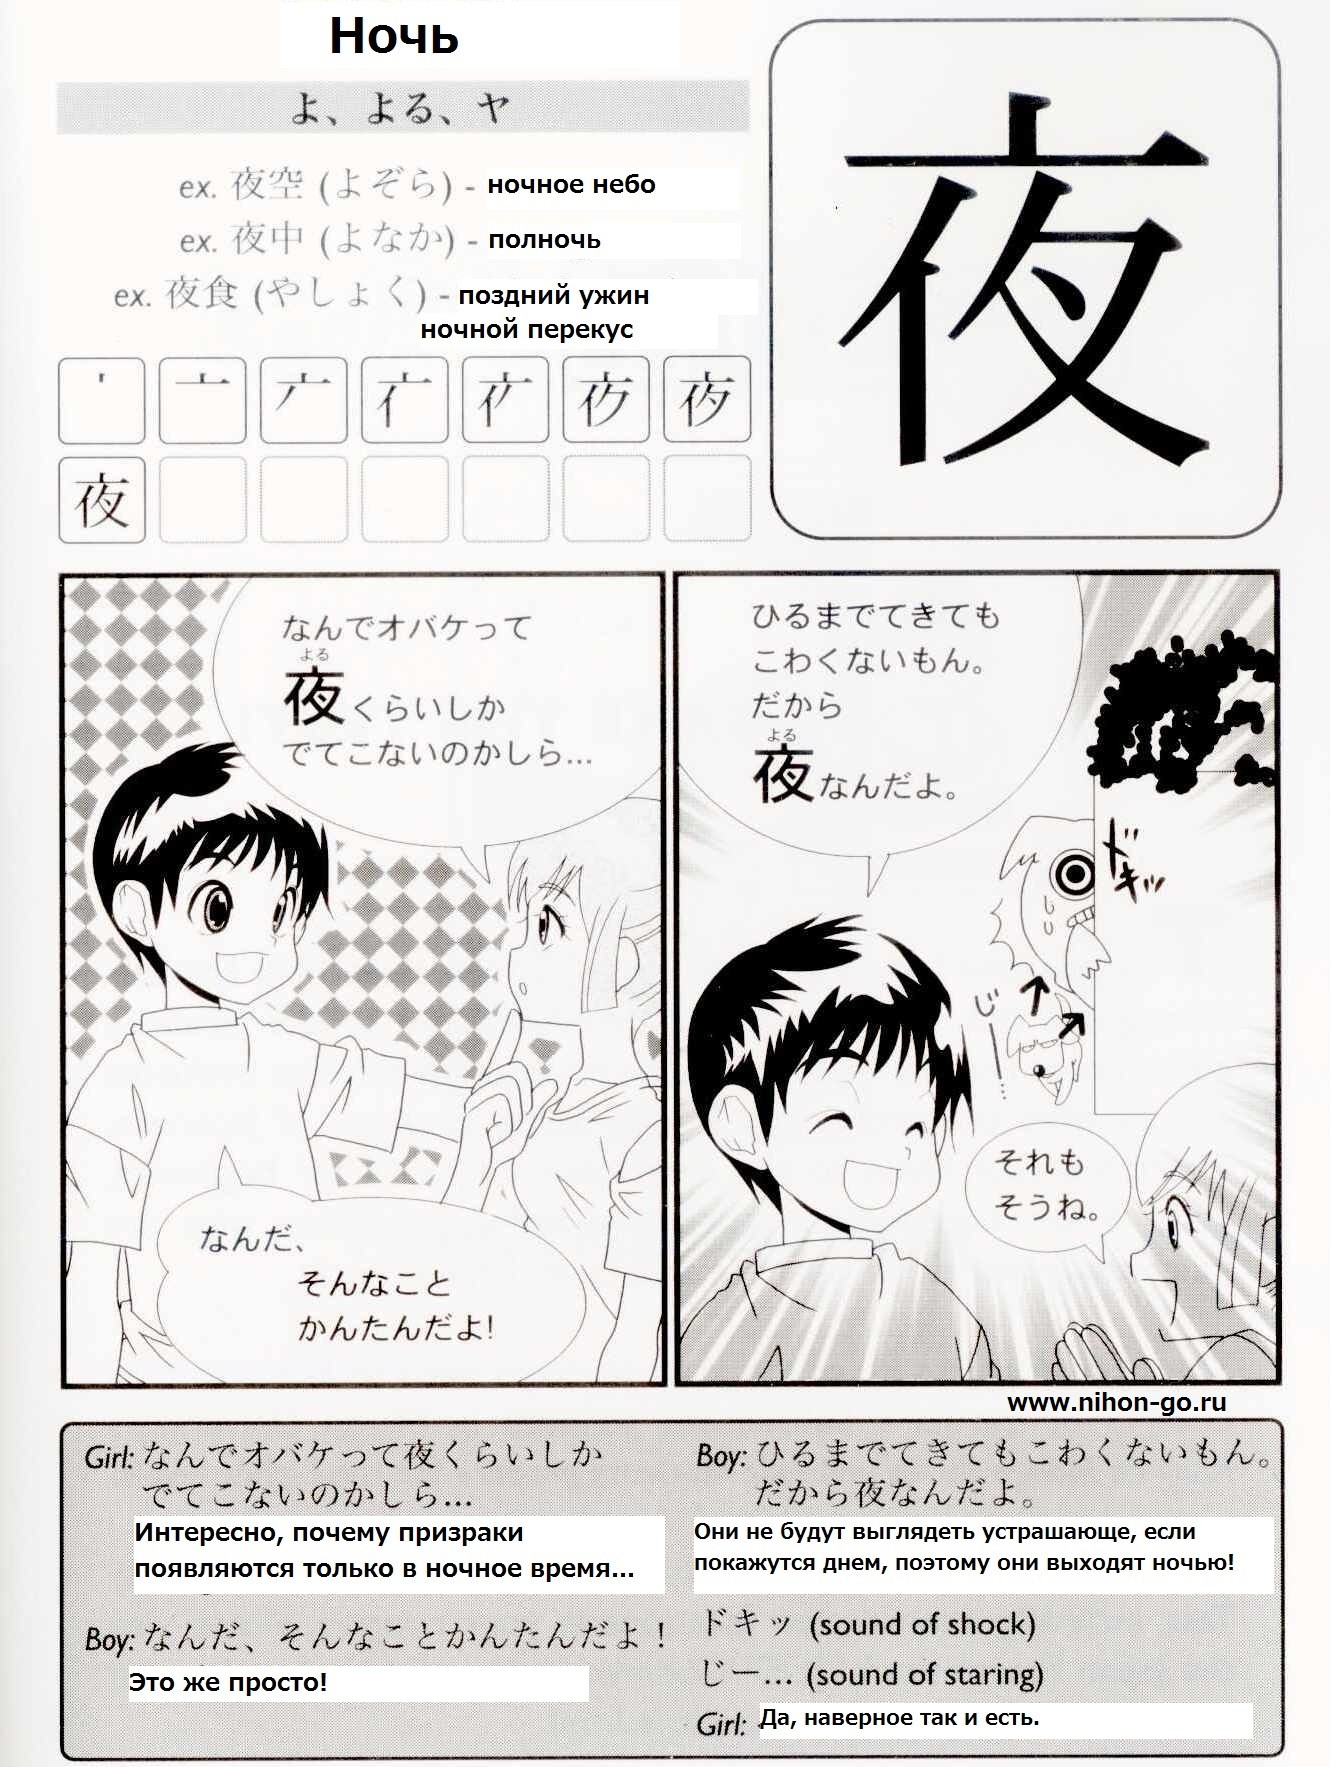 Читать мангу на китайском. Манга на японском. Японские комиксы на японсеомязыке. Комиксы на японском языке. Японский текст.